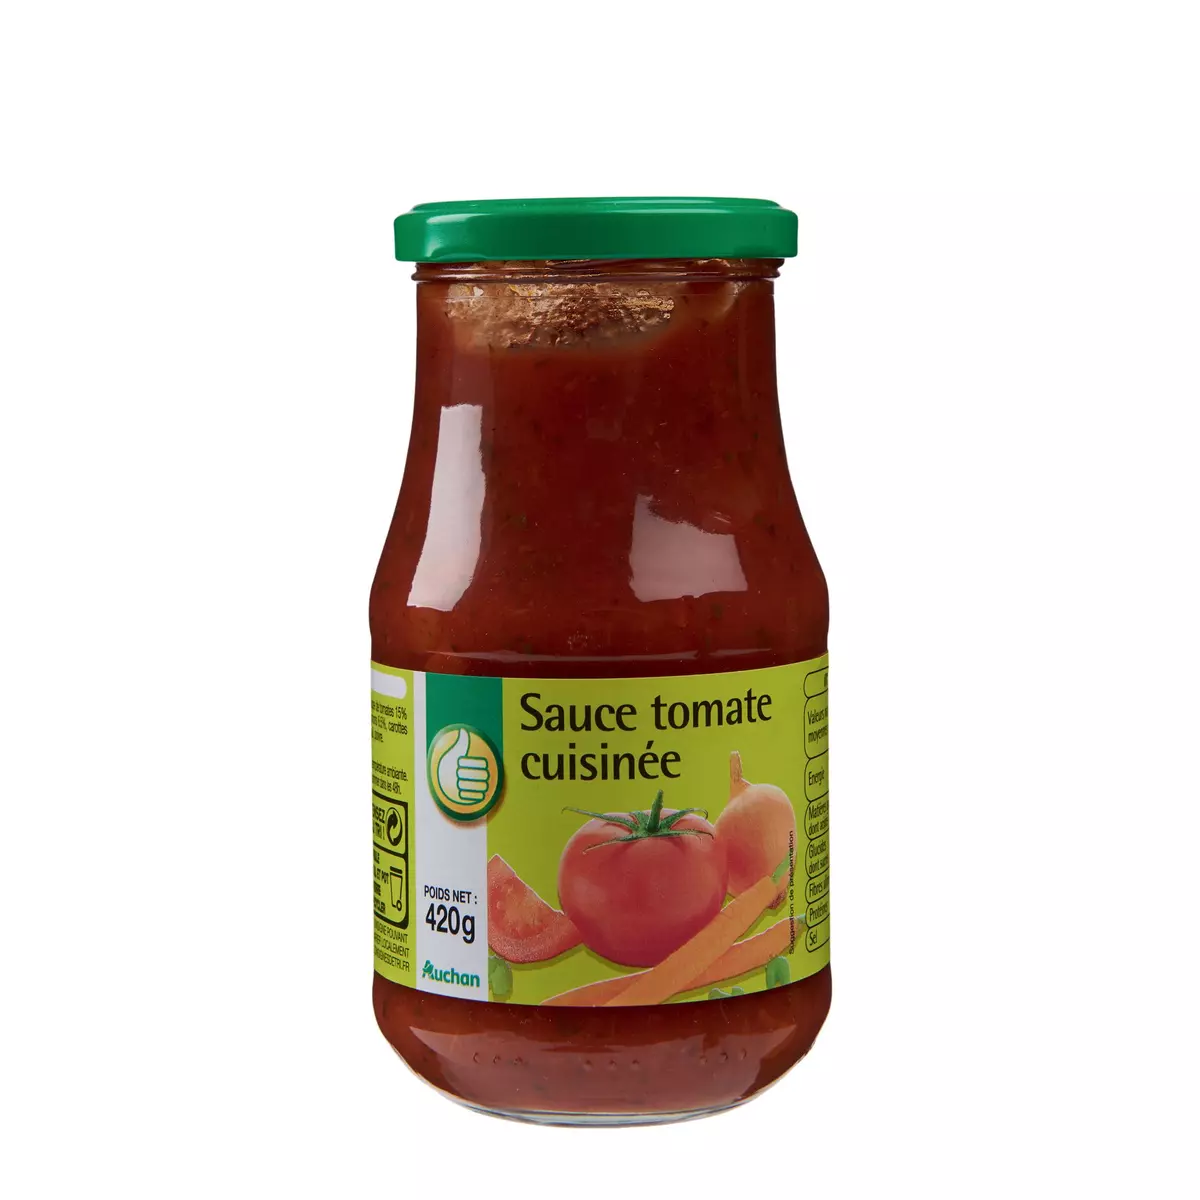 POUCE Sauce tomate cuisinée, en bocal 420g